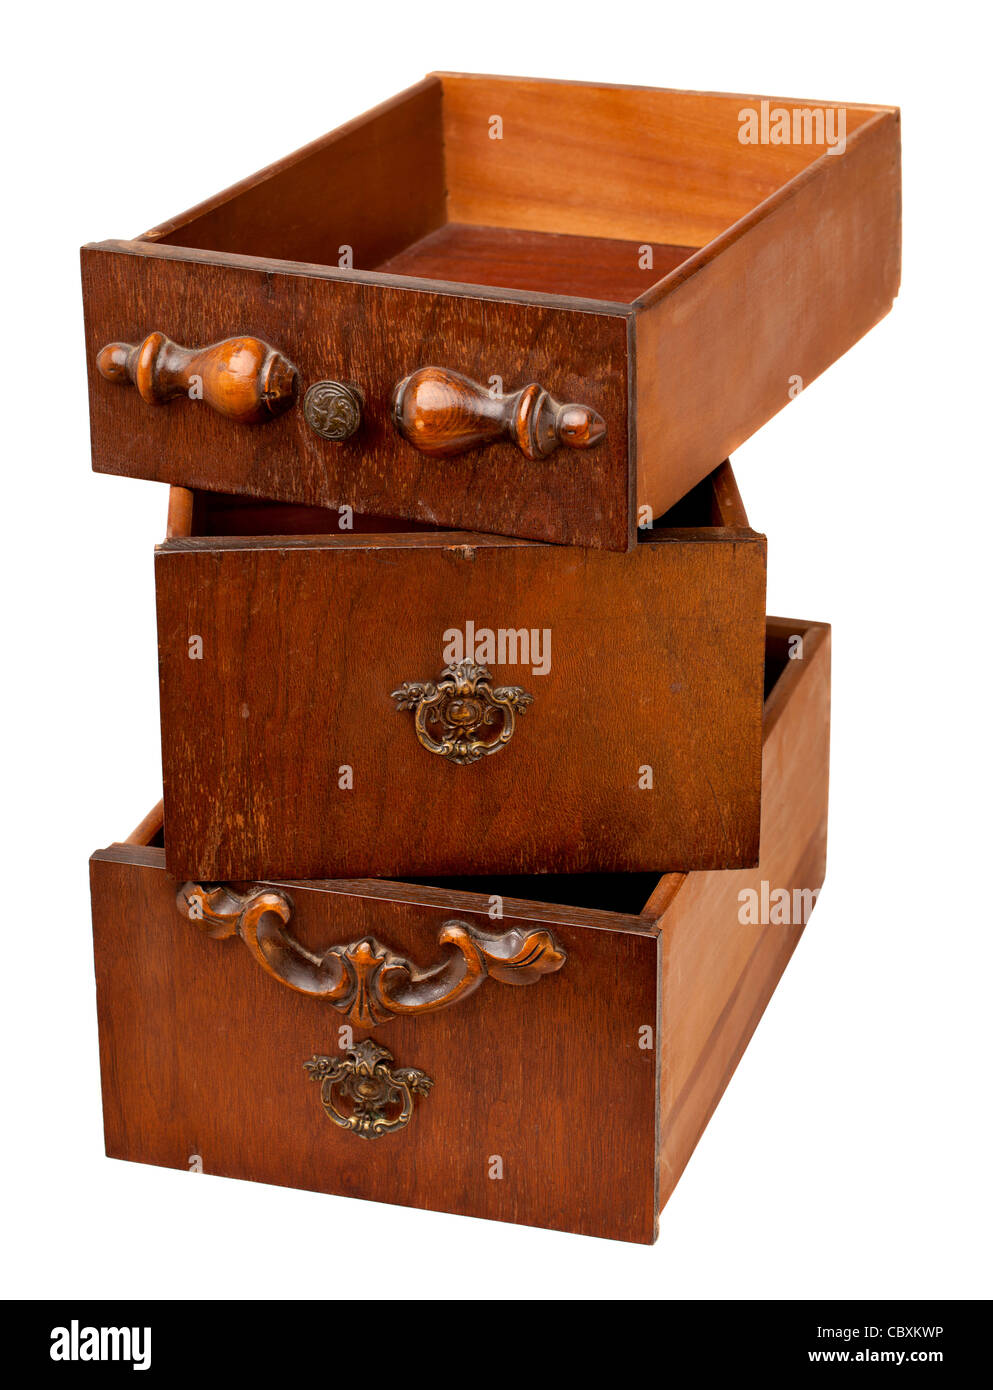 Concept de stockage - une pile de trois tiroirs en bois vintage isolated on white Banque D'Images